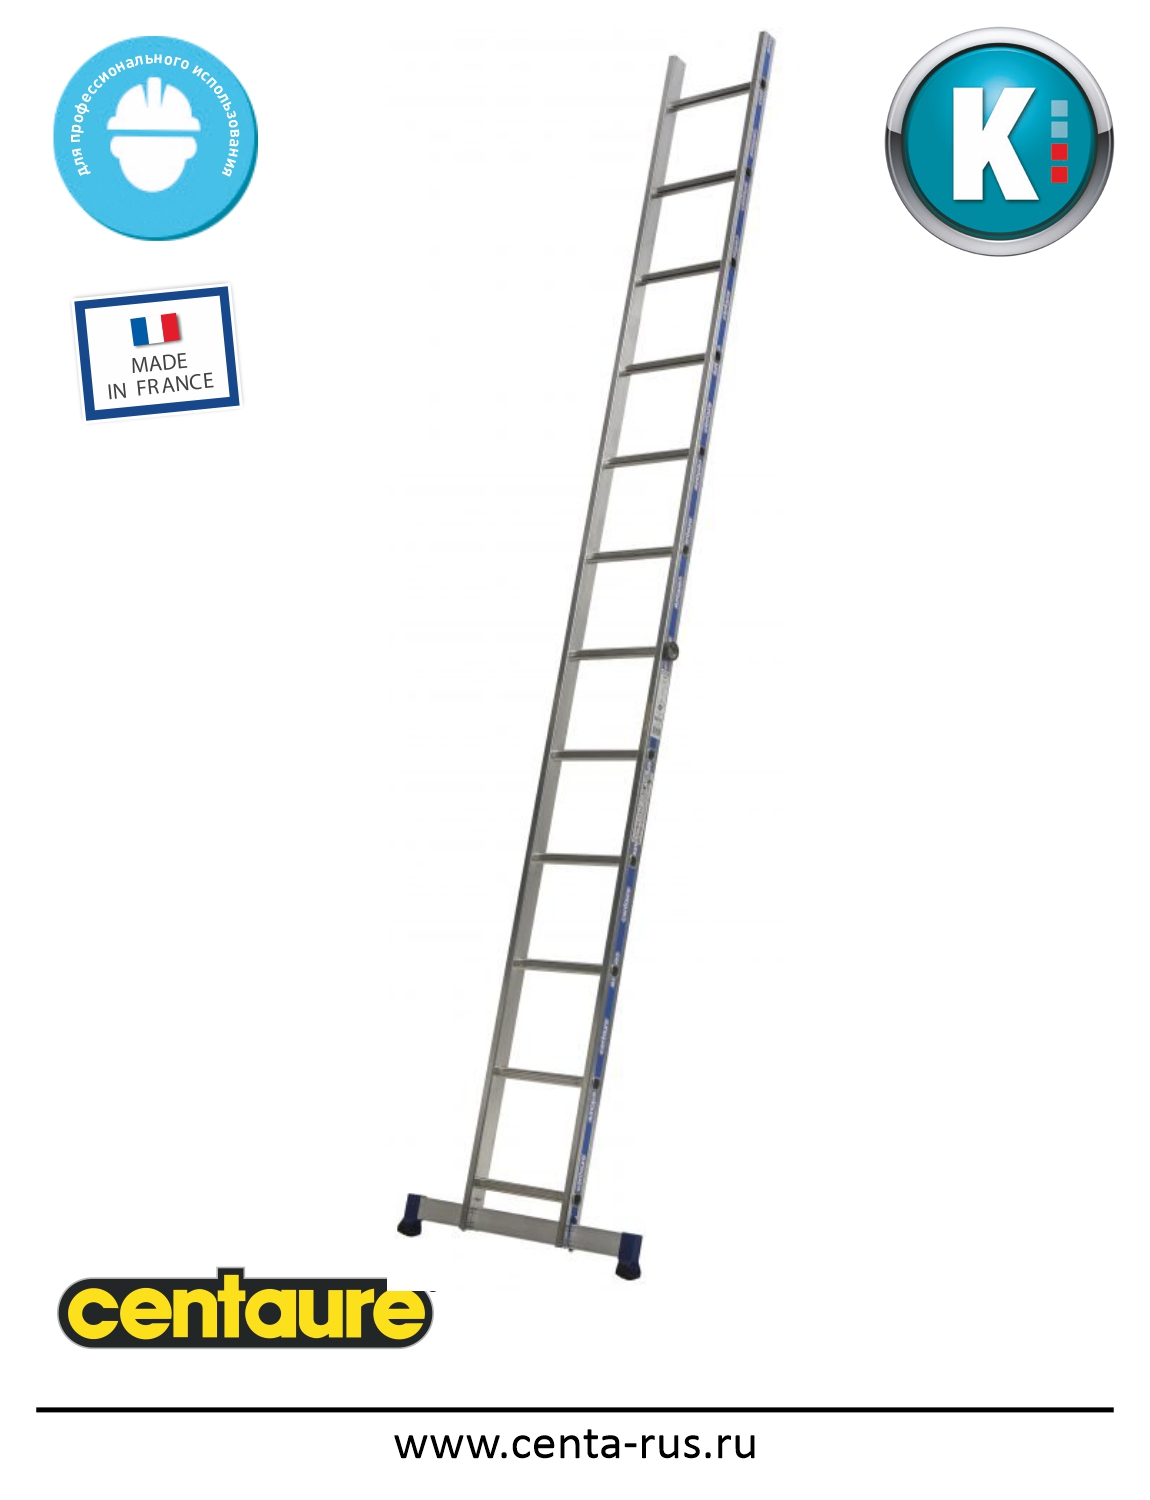 Односекционная лестница Centaure KS 12 ступеней 203112